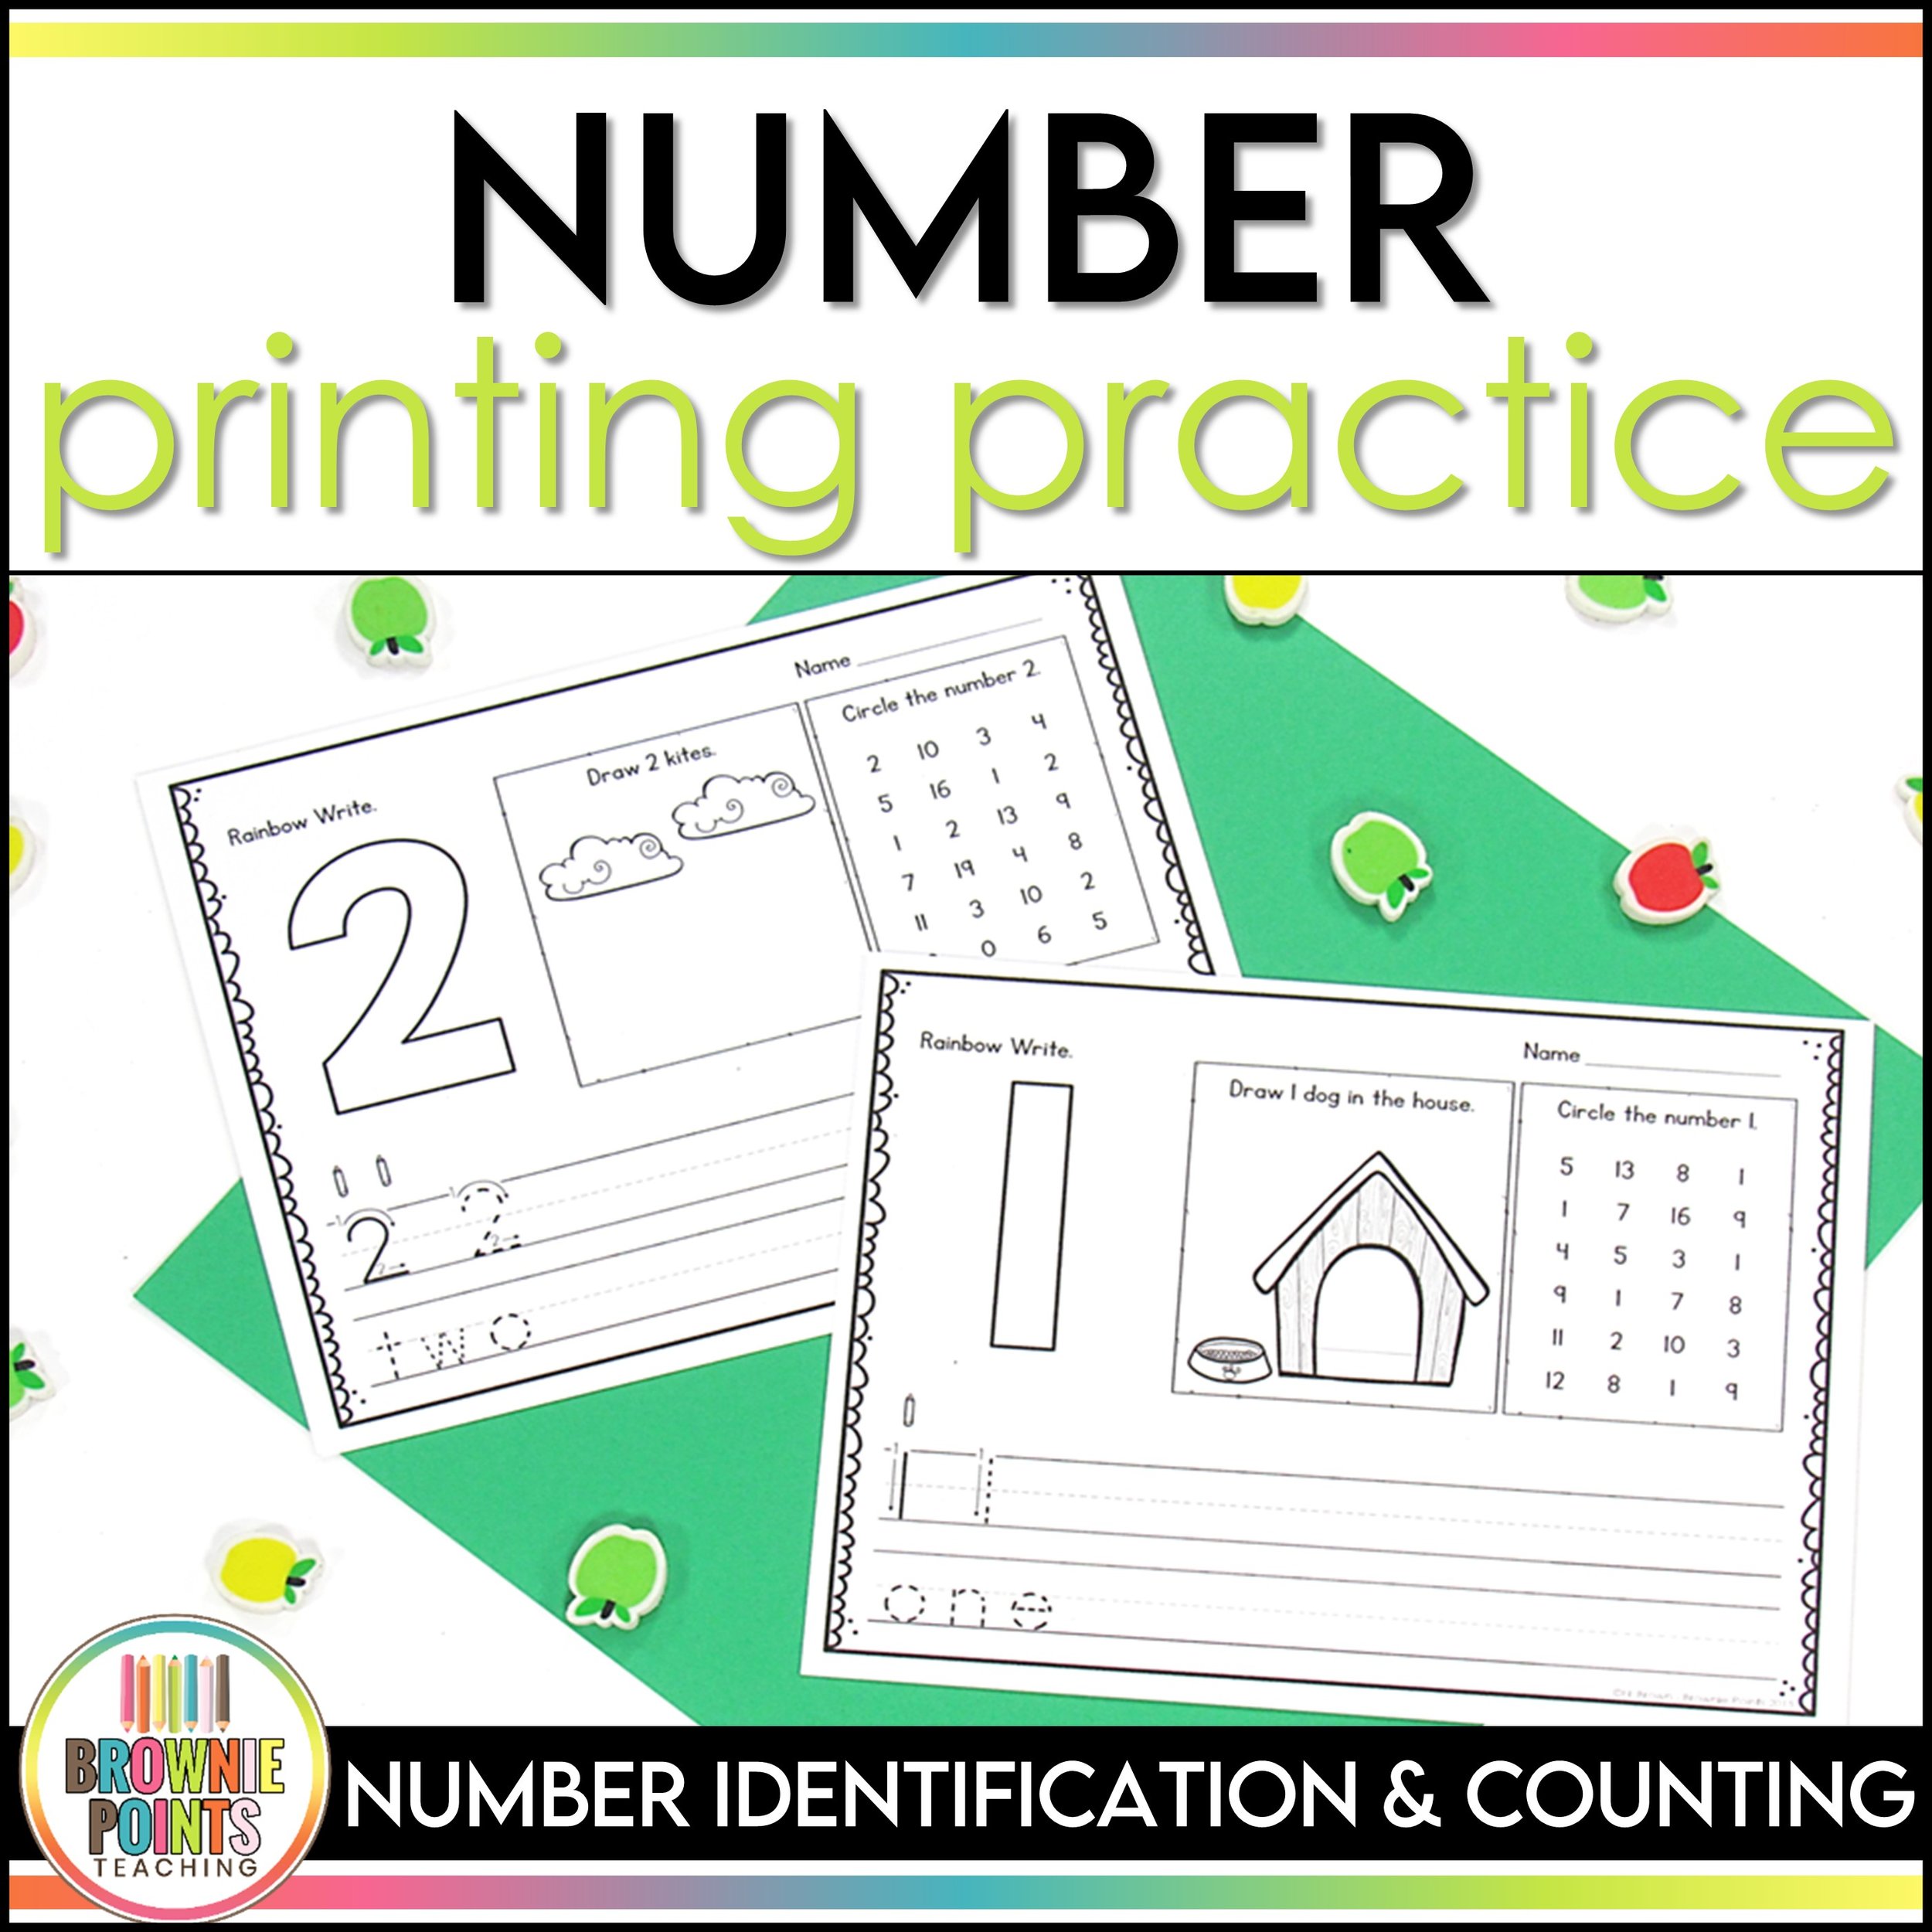 Number Printing Practice